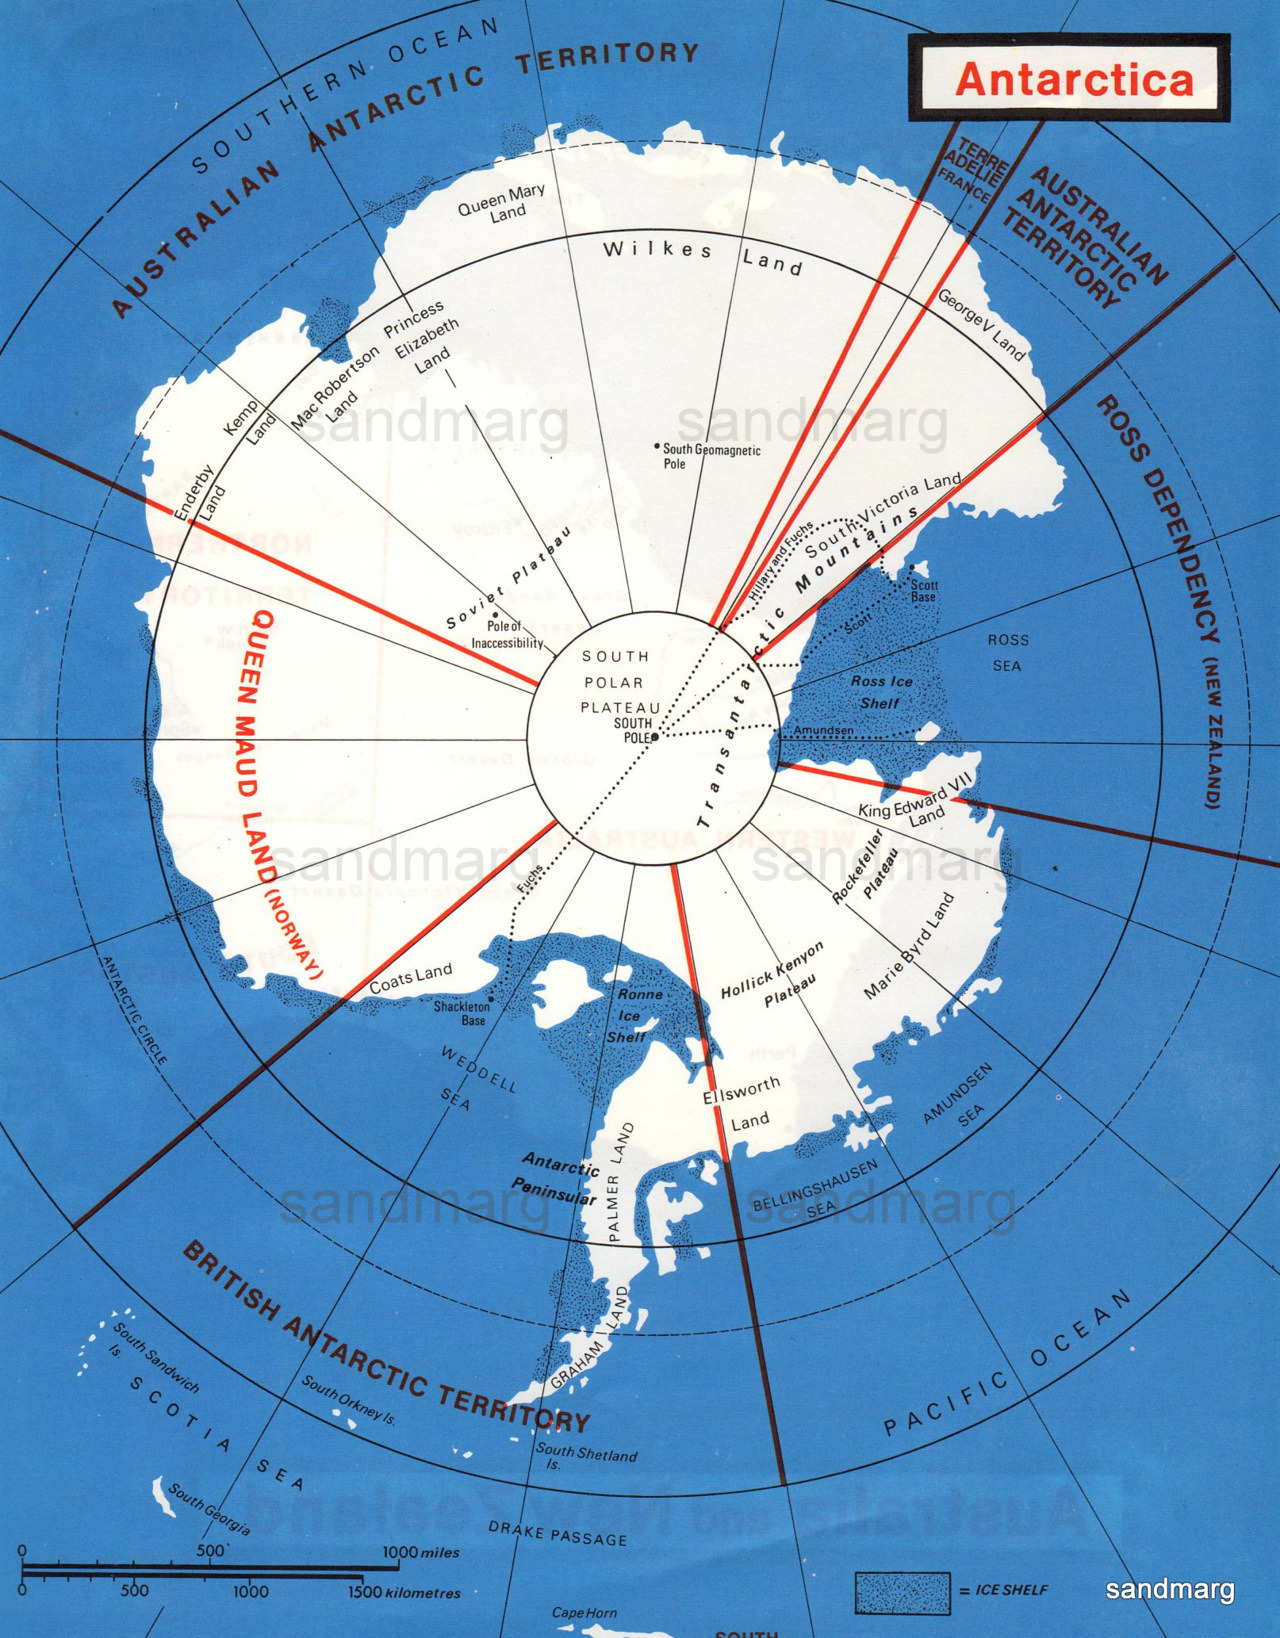 sandmarg:
“ 1974 Antarctica
”